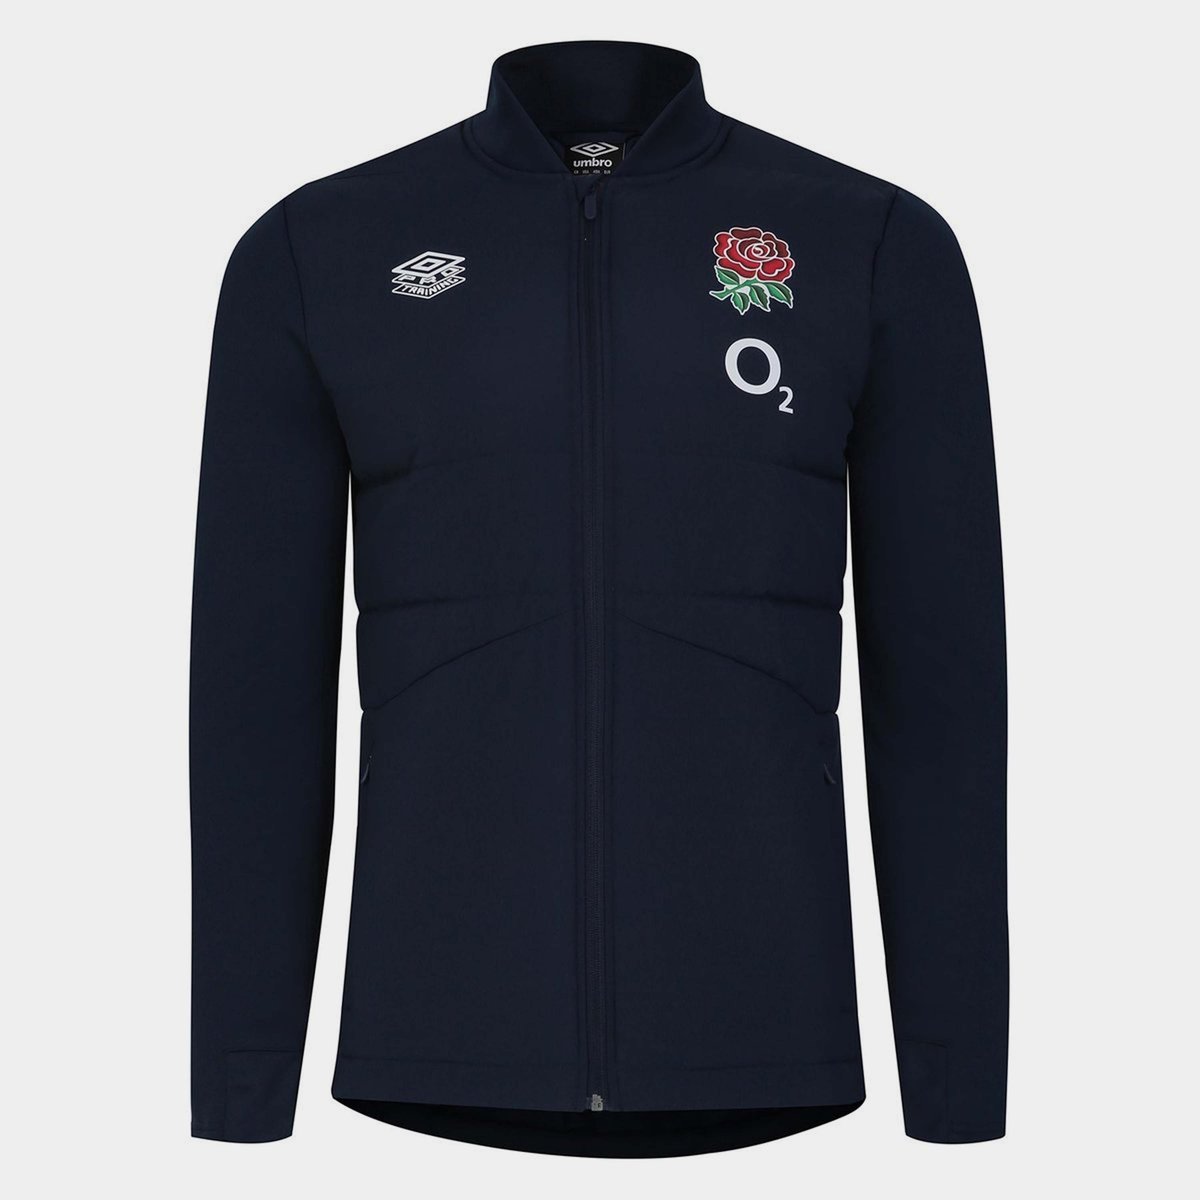 England Rugby Fleece Jacket Nike Vintage Size L 